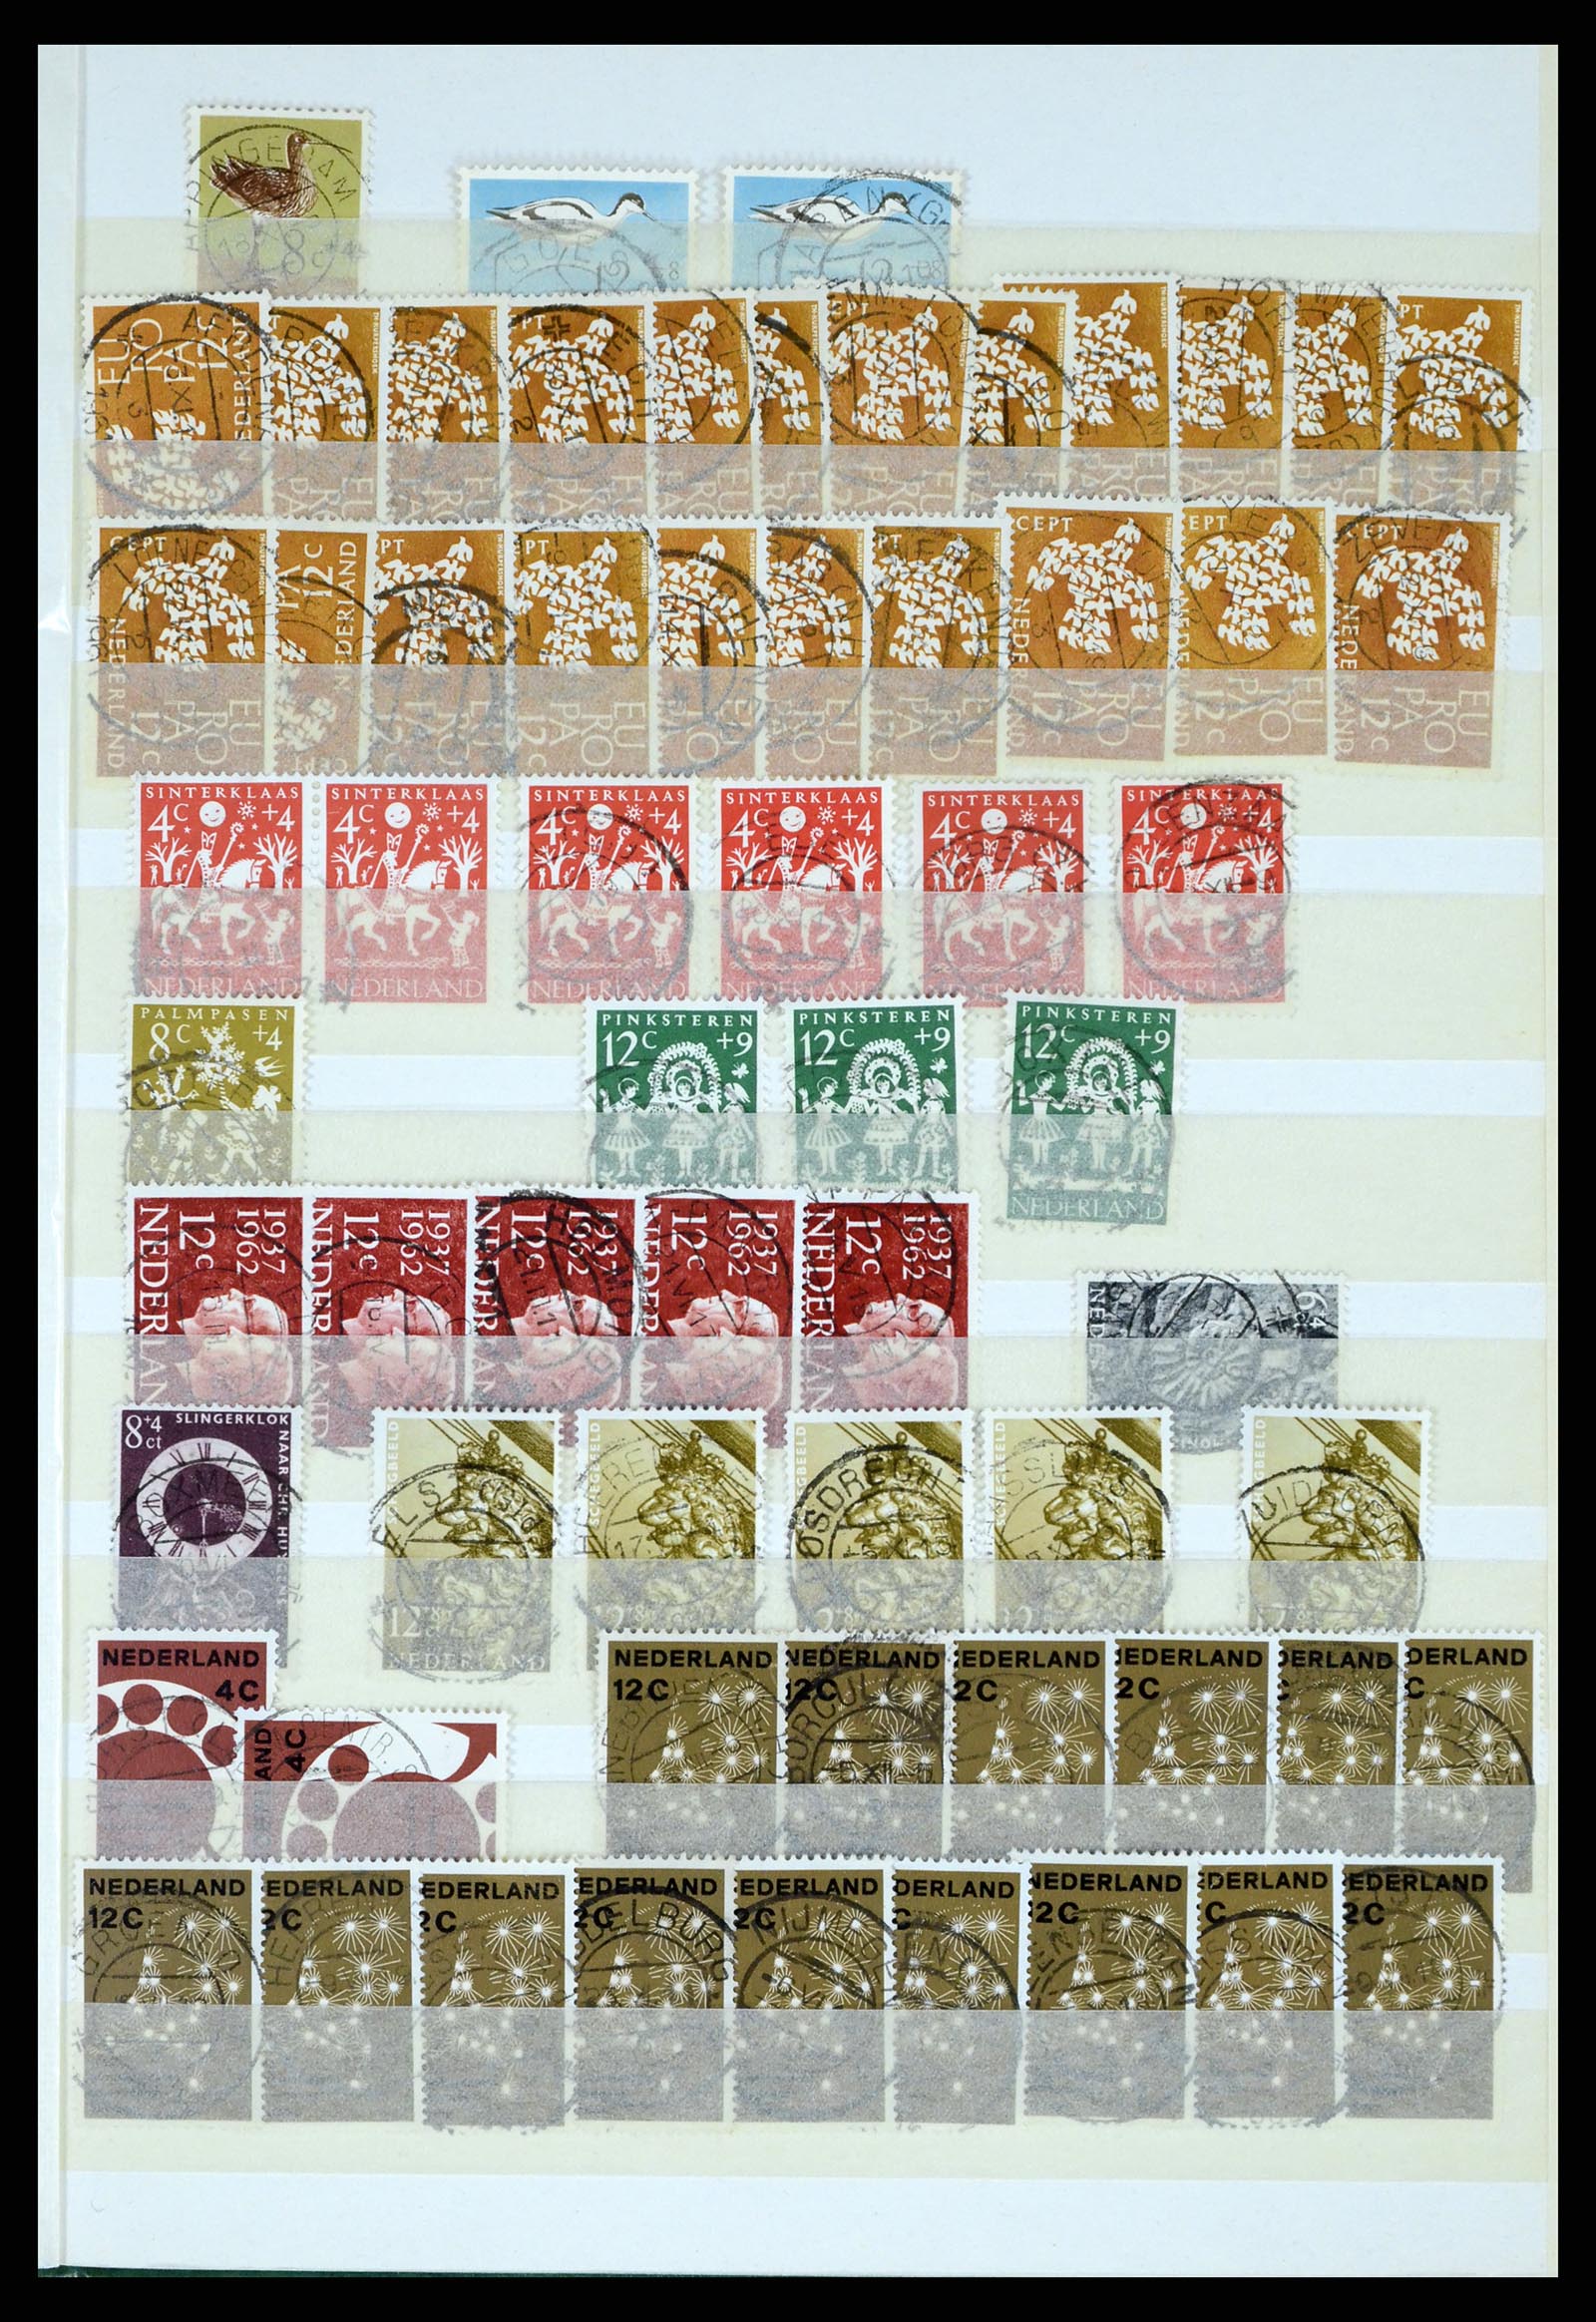 37424 055 - Postzegelverzameling 37424 Nederland kortebalk stempels.